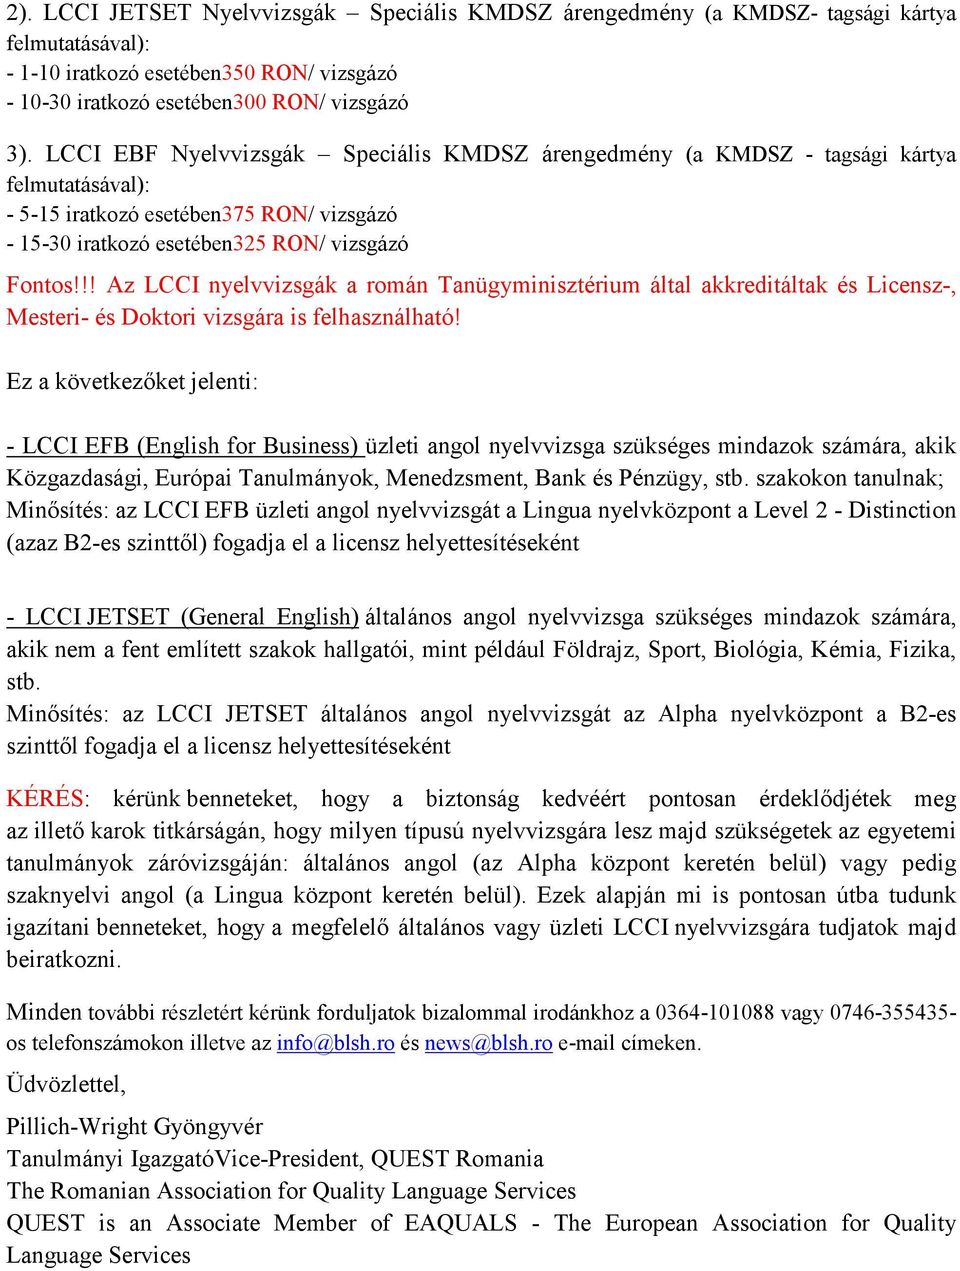 !! Az LCCI nyelvvizsgák a román Tanügyminisztérium által akkreditáltak és Licensz-, Mesteri- és Doktori vizsgára is felhasználható!